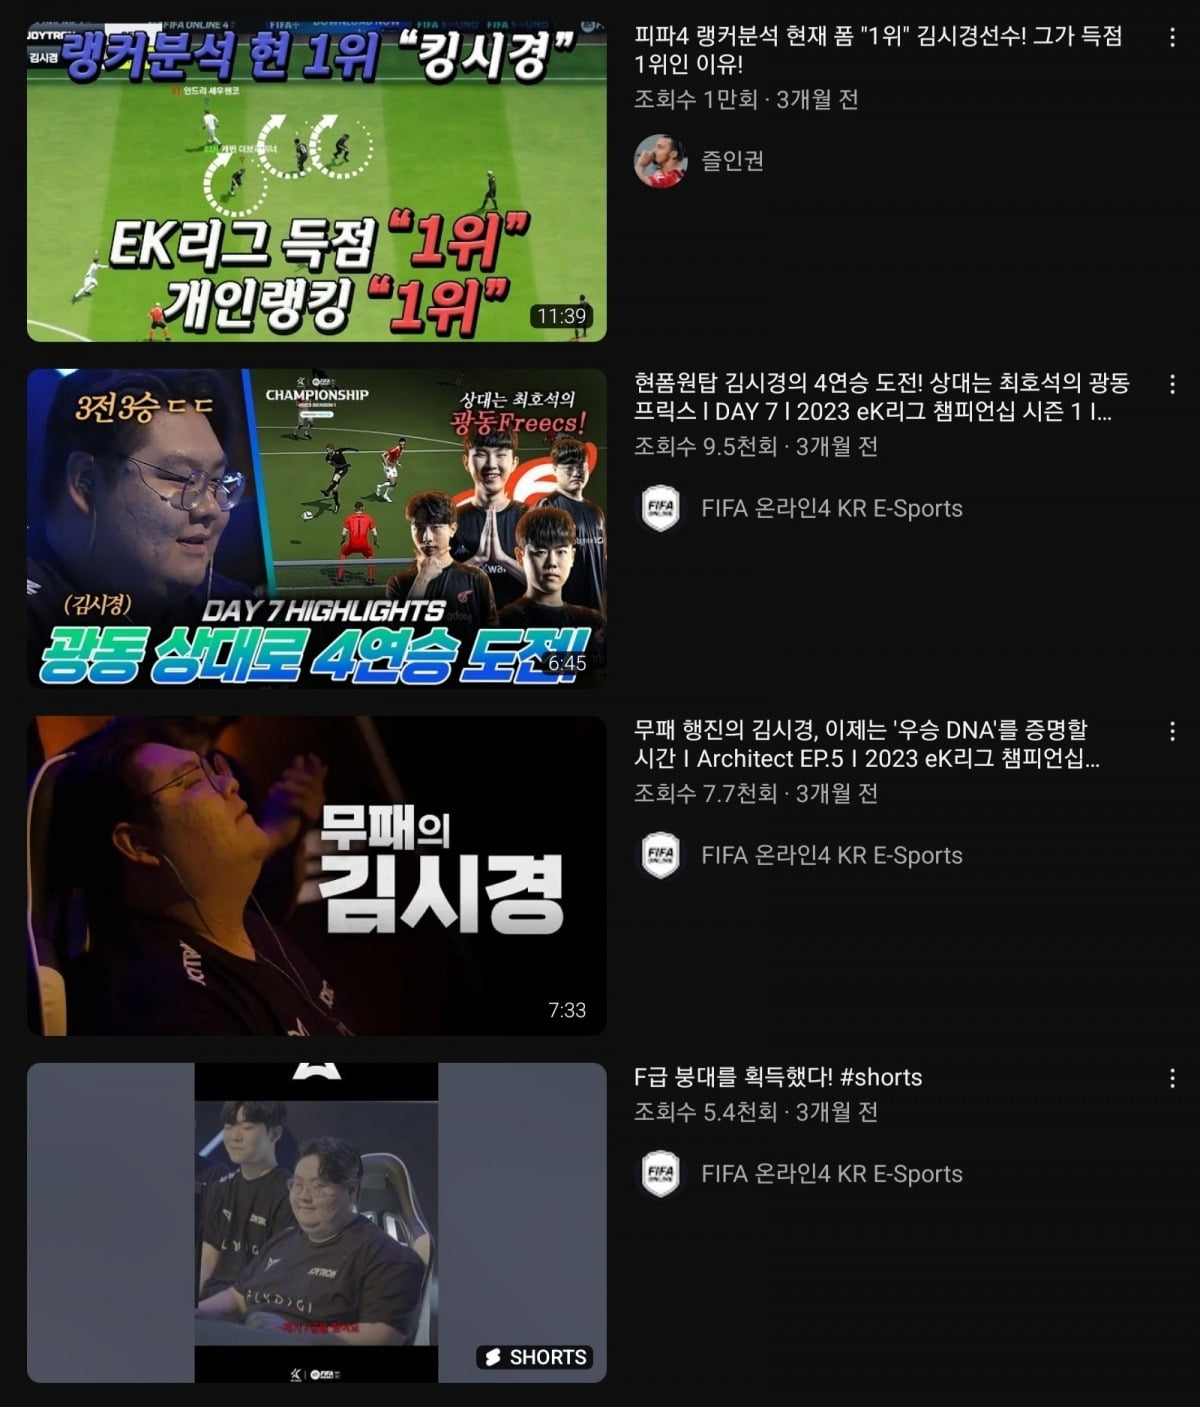 유튜브에 올라온 김시경 씨의 영상 콘텐츠.
